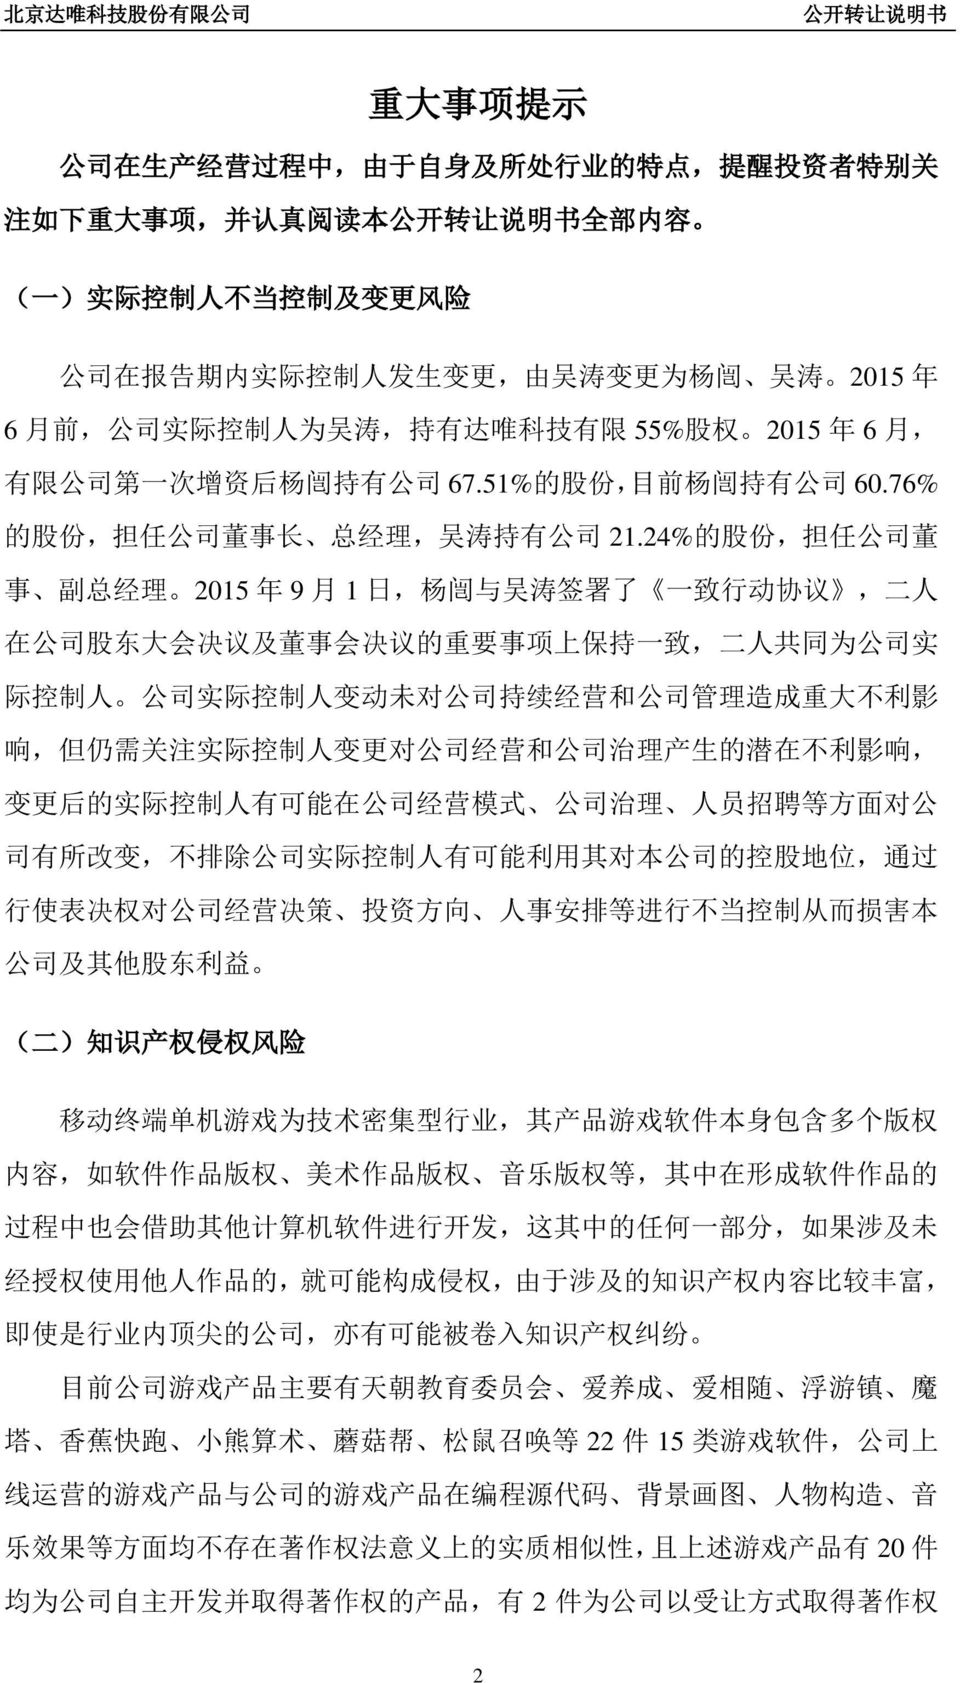 24% 的 股 份, 担 任 公 司 董 事 副 总 经 理 2015 年 9 月 1 日, 杨 闿 与 吴 涛 签 署 了 一 致 行 动 协 议, 二 人 在 公 司 股 东 大 会 决 议 及 董 事 会 决 议 的 重 要 事 项 上 保 持 一 致, 二 人 共 同 为 公 司 实 际 控 制 人 公 司 实 际 控 制 人 变 动 未 对 公 司 持 续 经 营 和 公 司 管 理